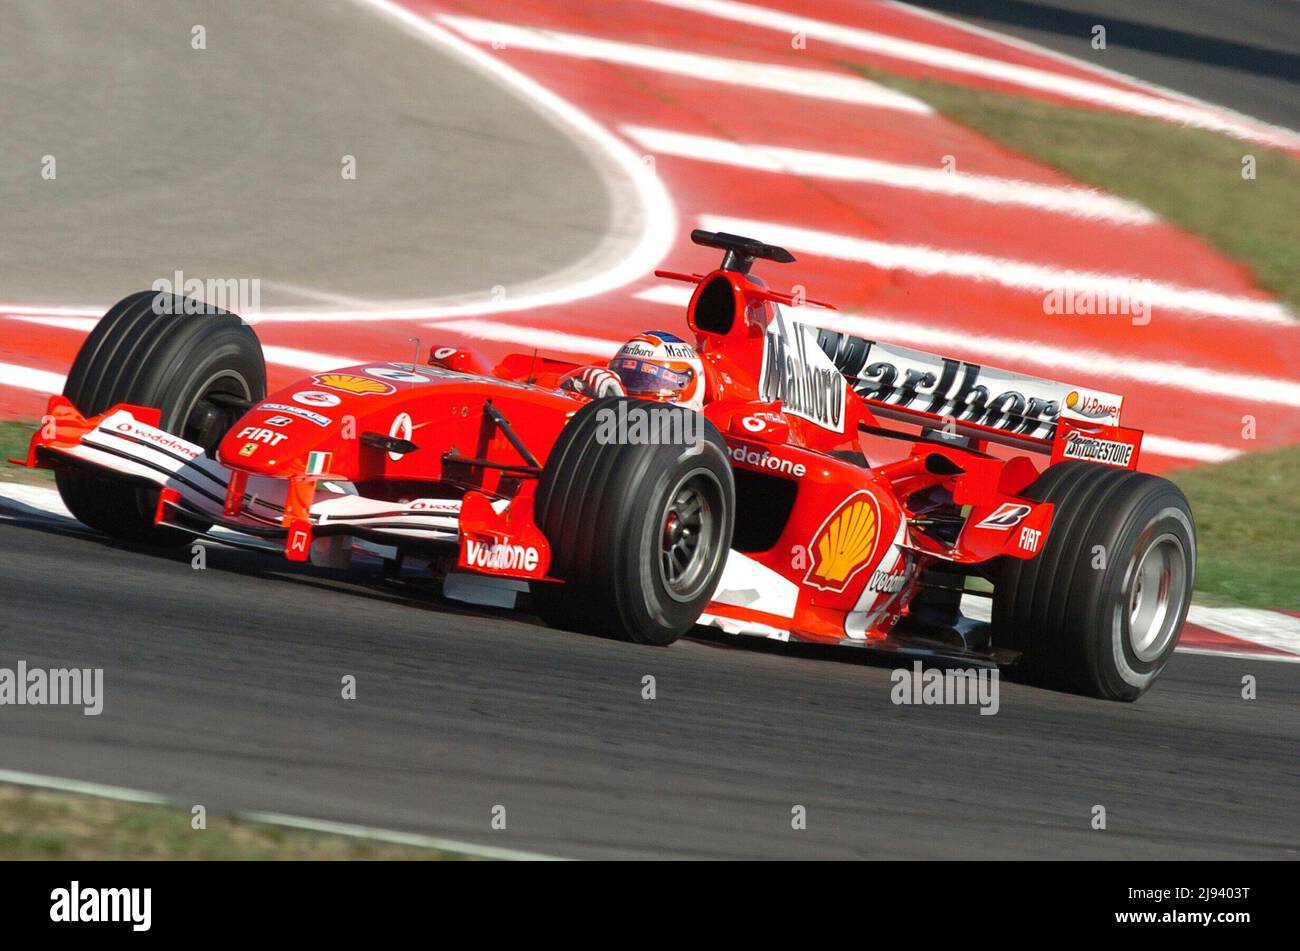 ARCHIVFOTO: Rubens BARRICHELLO wird 50 am 23. Mai 2022, Rubens BARRICHELLO, BH, Ferrari, Aktion.Formel 1, spanischer GP in Barcelona, 06.05.2005 Stockfoto